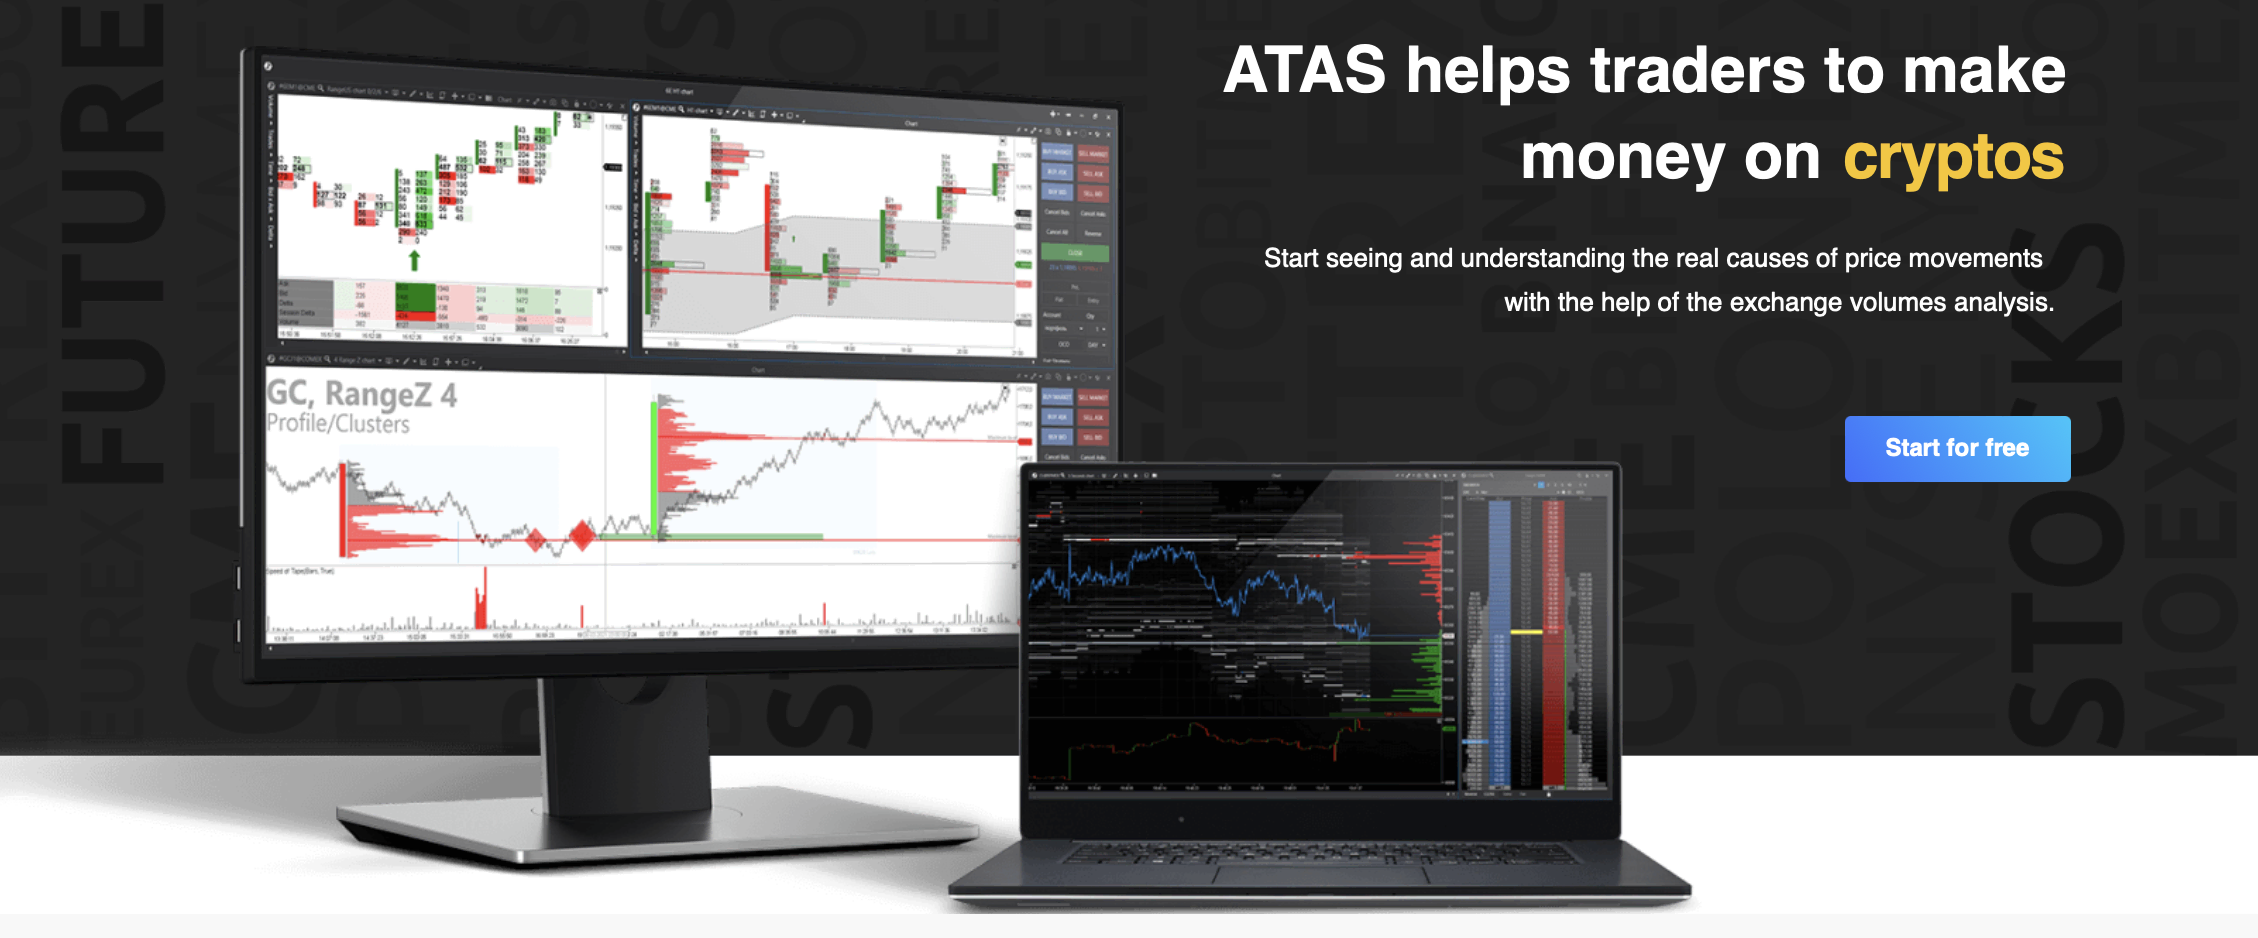 Il sito ufficiale della piattaforma di trading ATAS